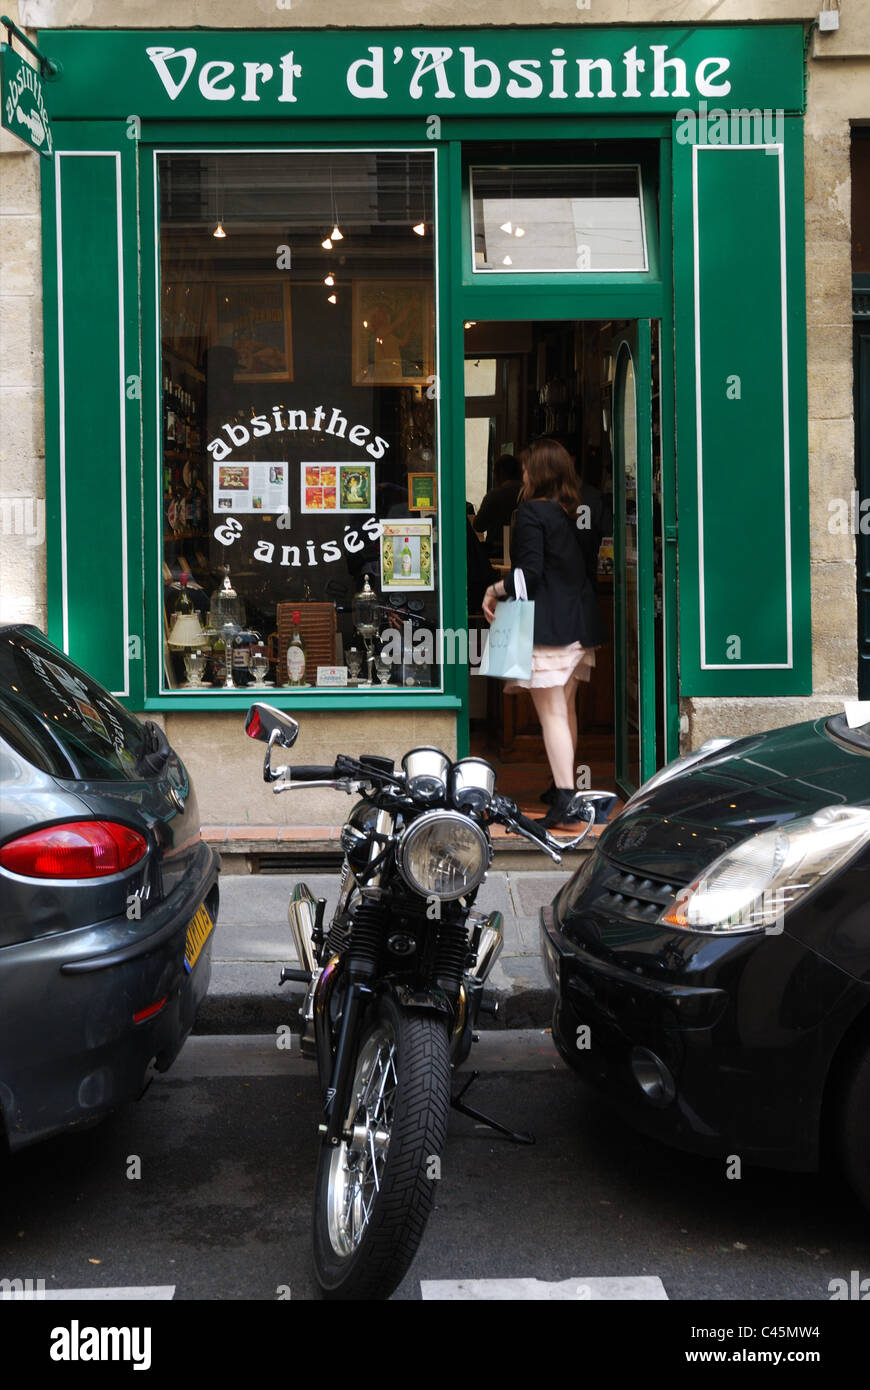 An absinthe shop in Paris Stock Photo